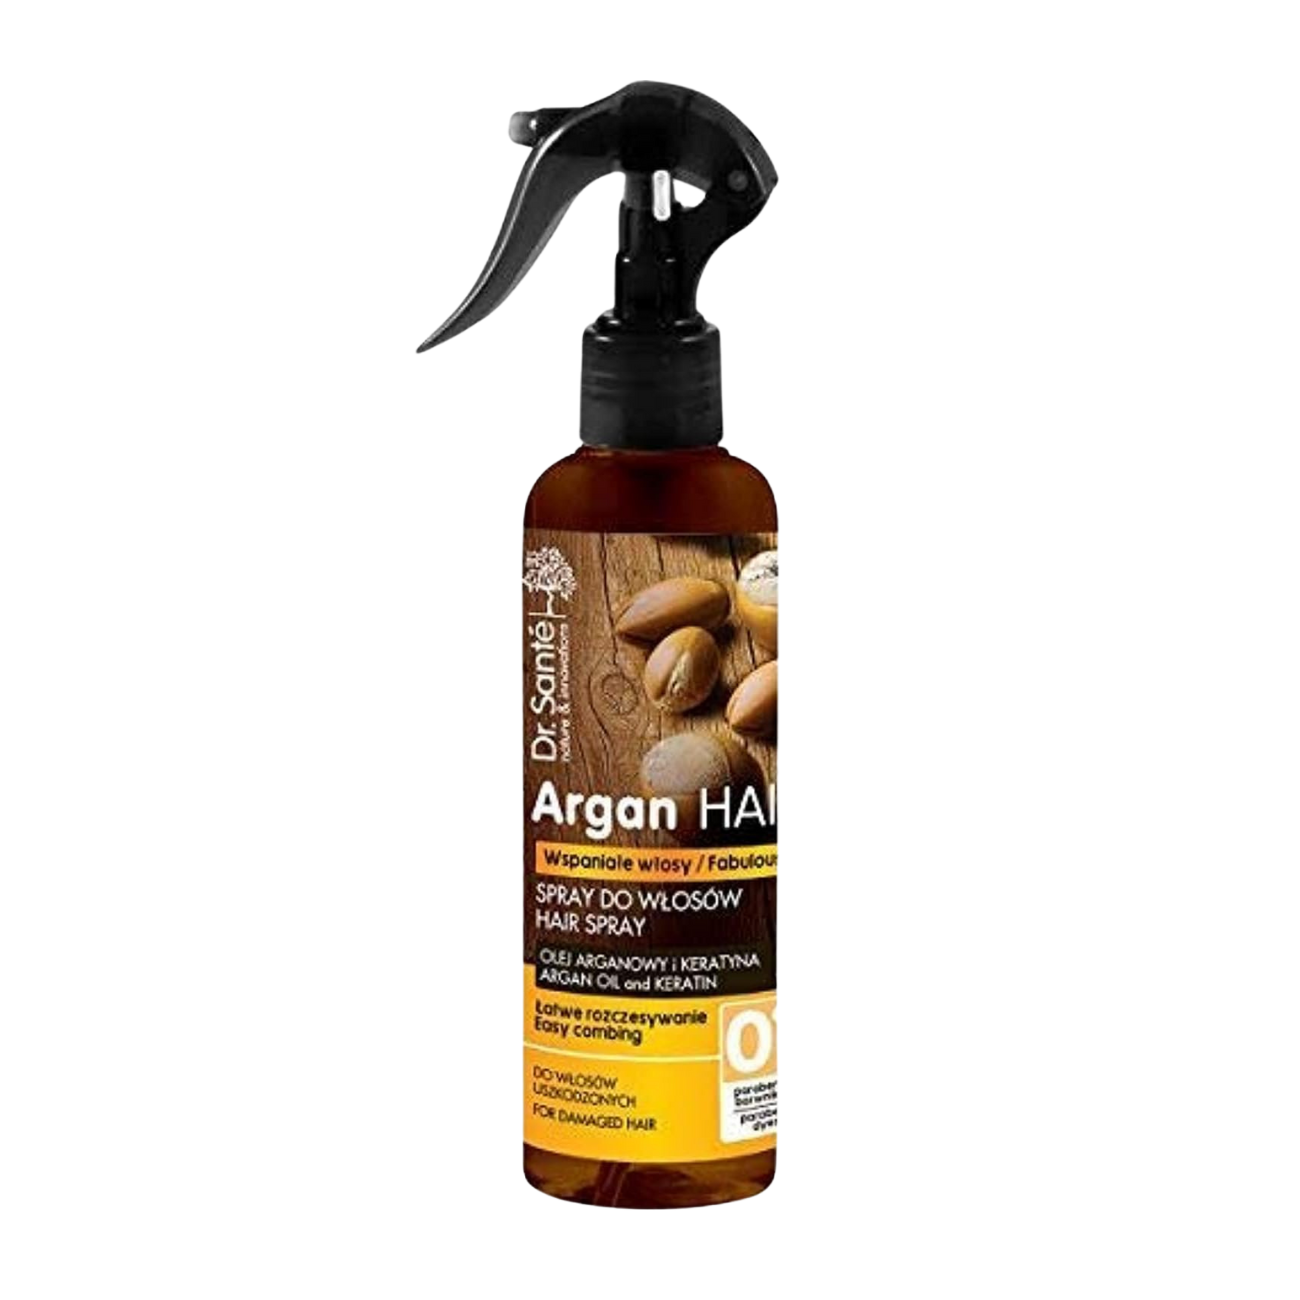 Argan Hair Spray for Damaged Hair with Keratin 150ml